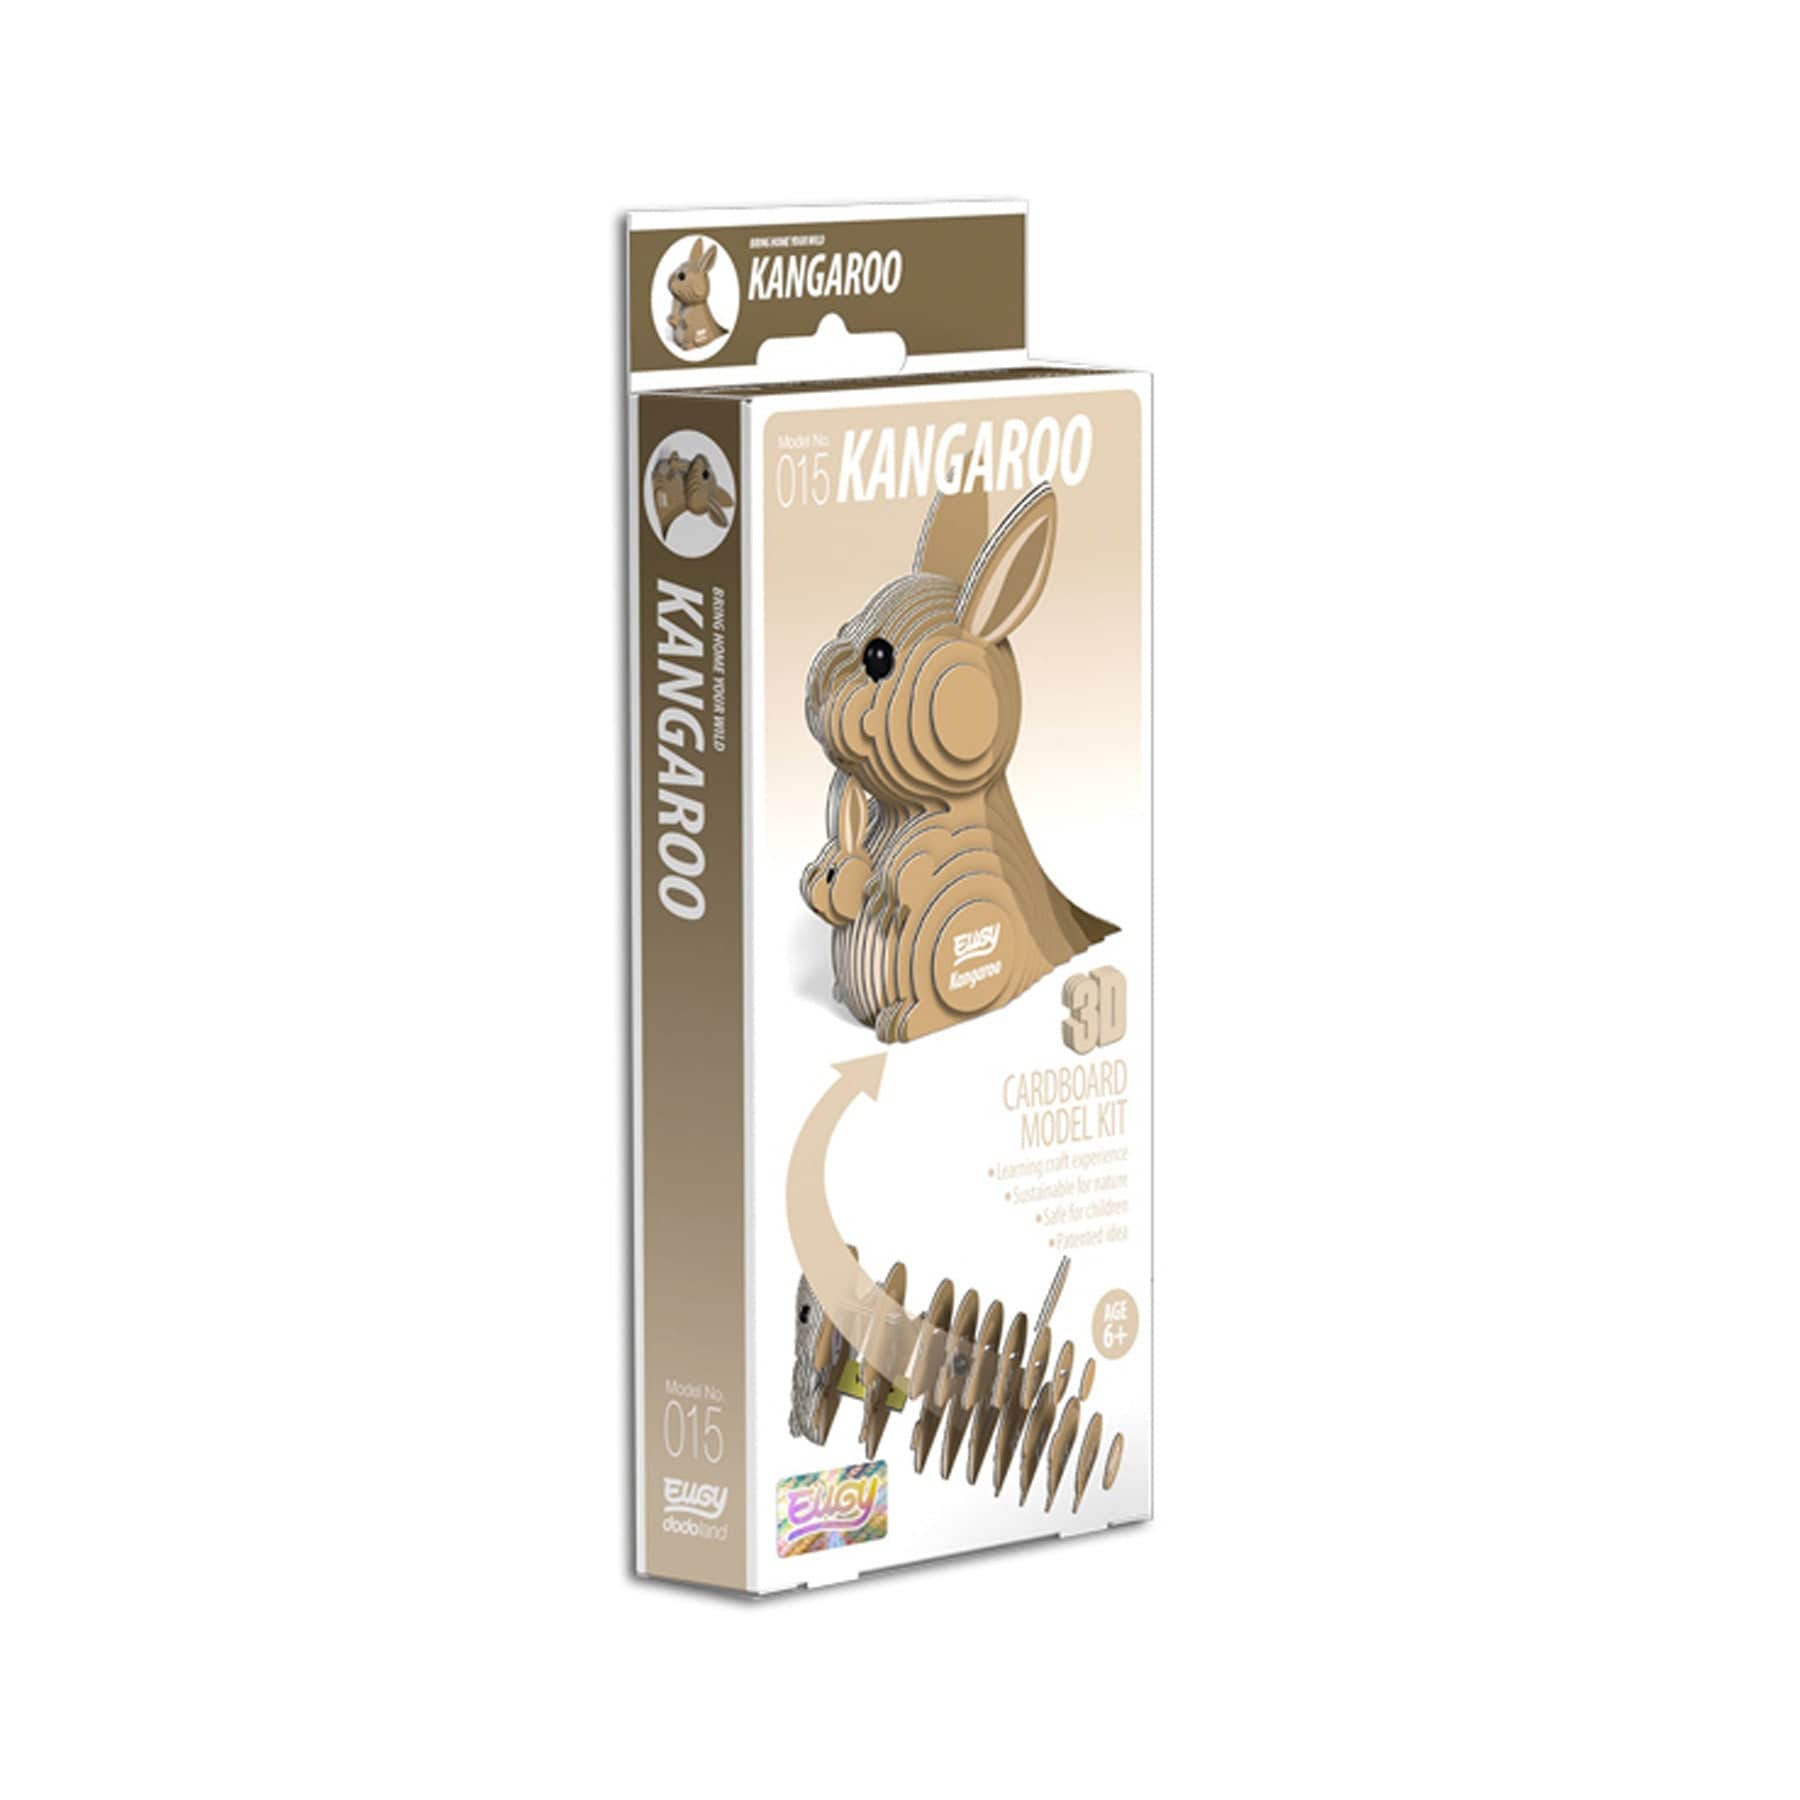 Kangaroo 3D model kit